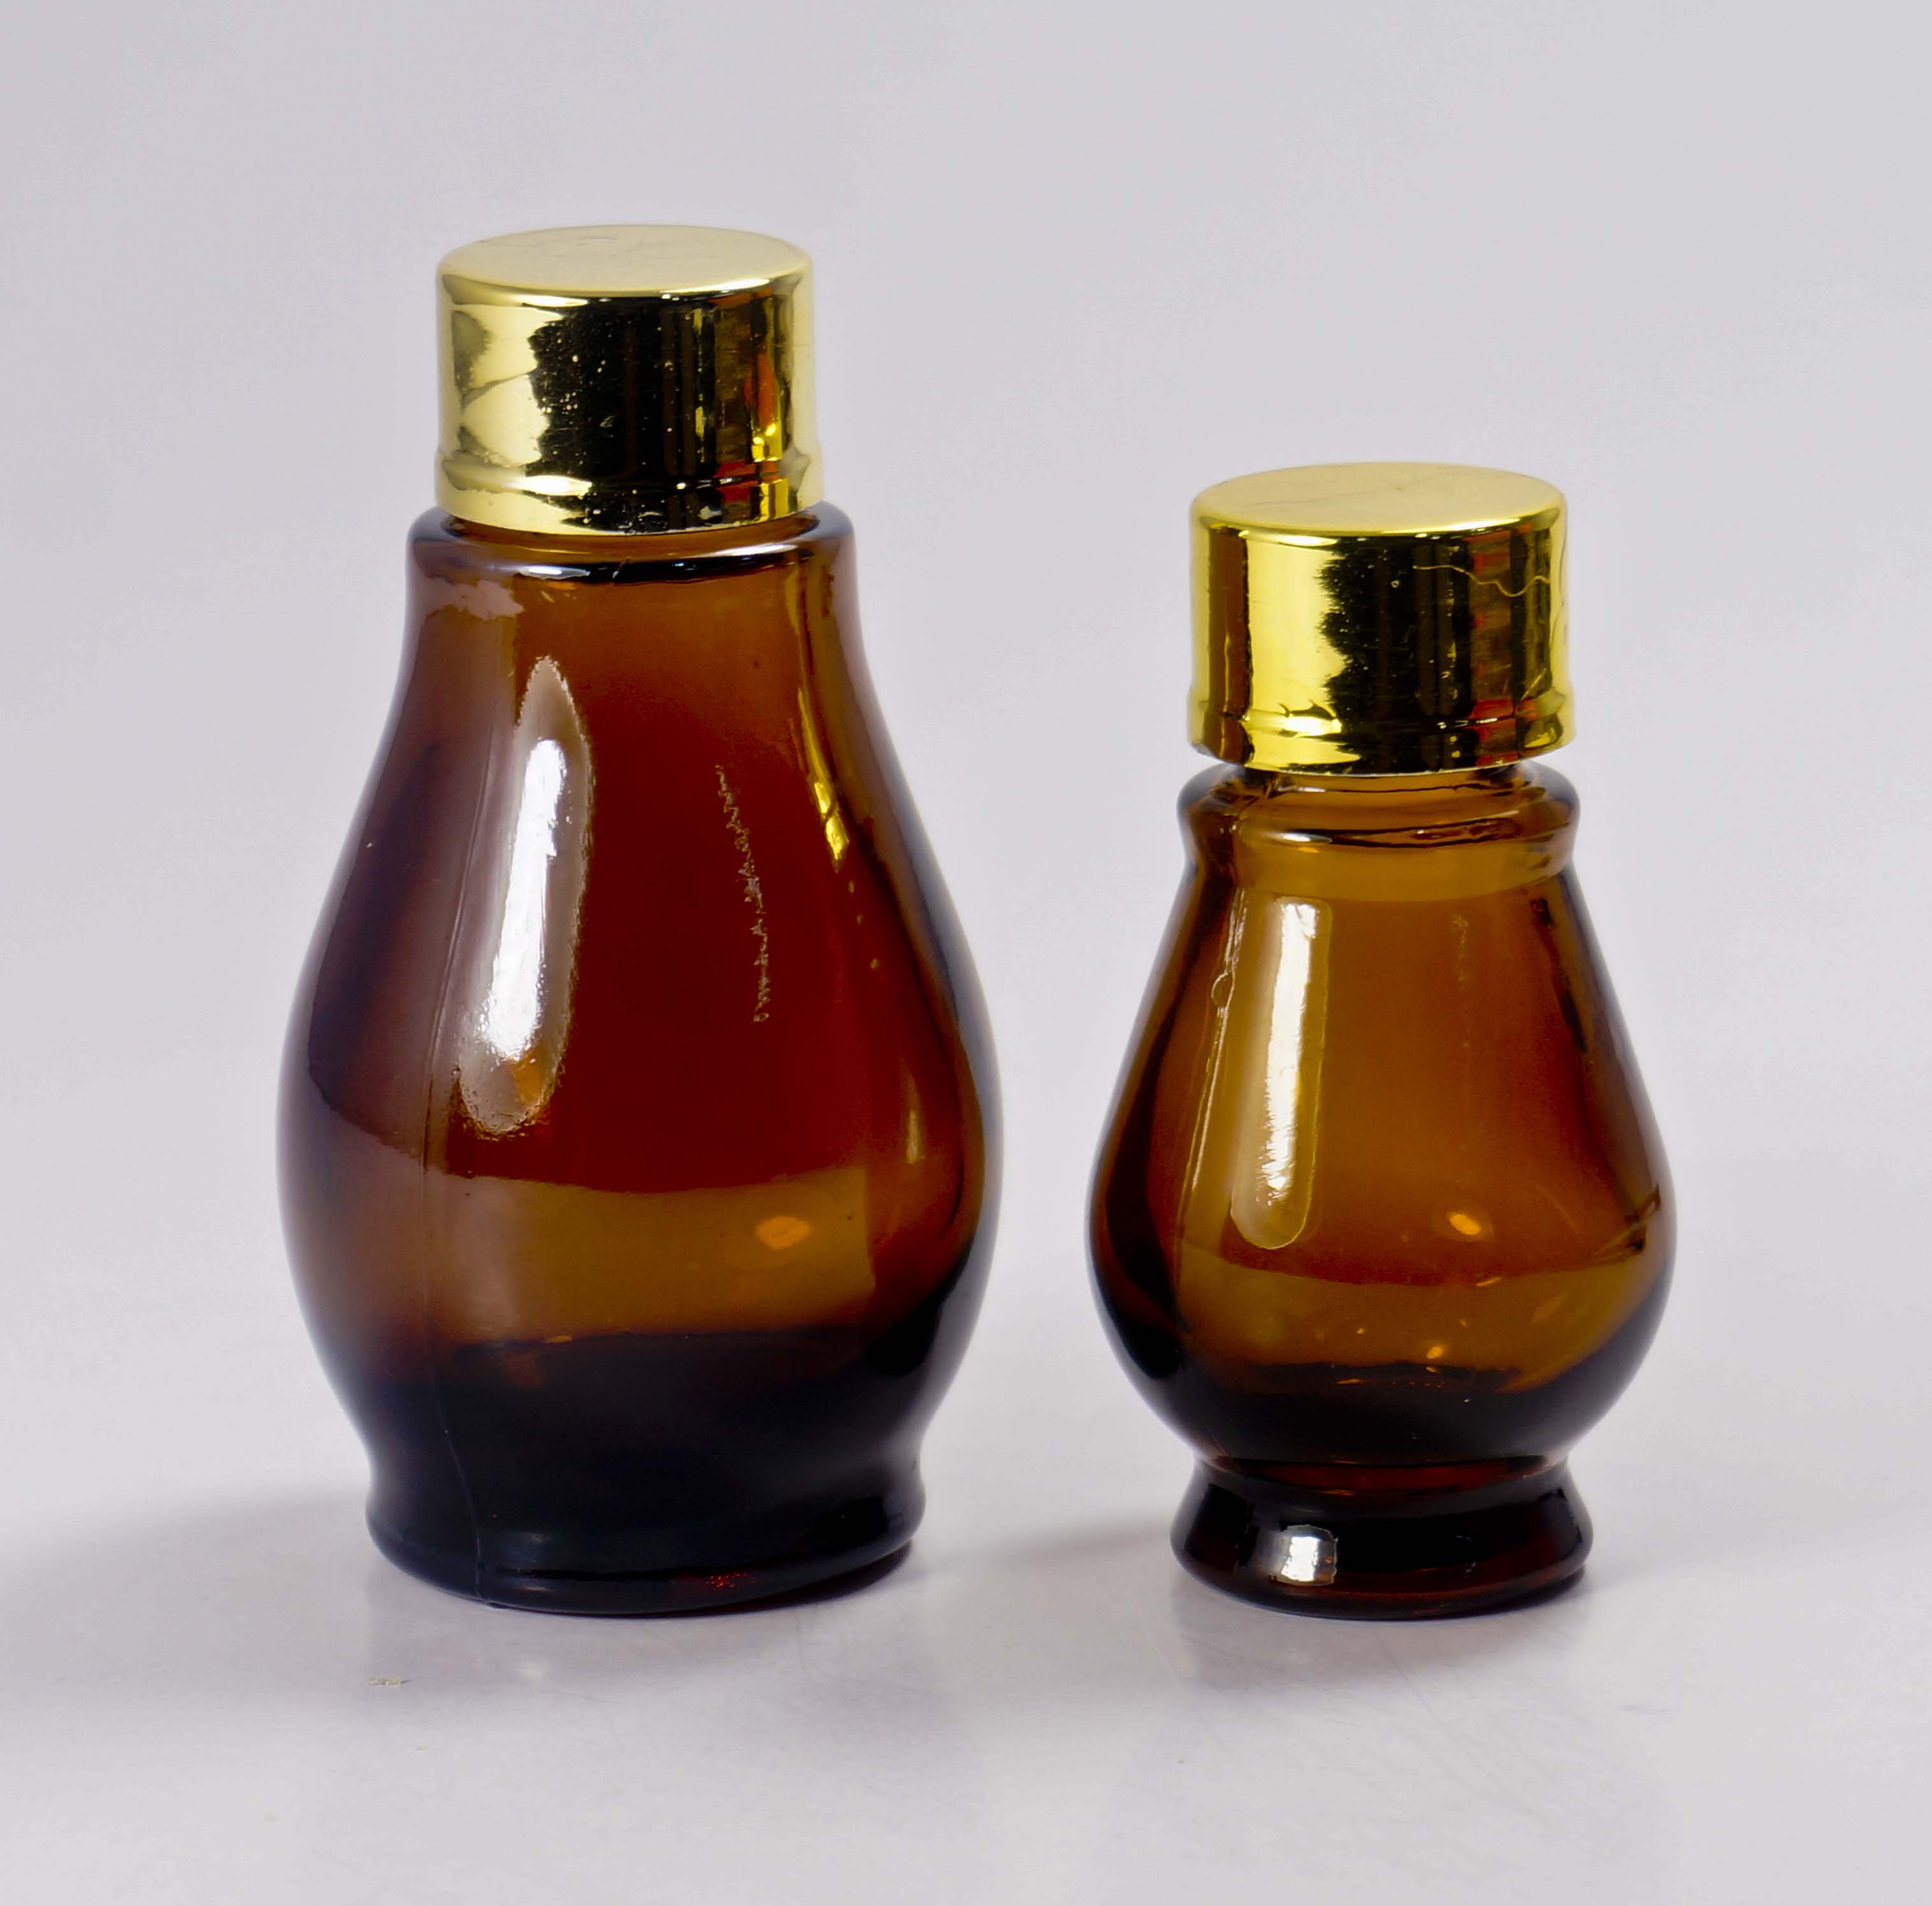 正供应茶色双葫芦药油玻璃瓶批发 葫芦玻璃瓶批发彩色精油瓶订做图片